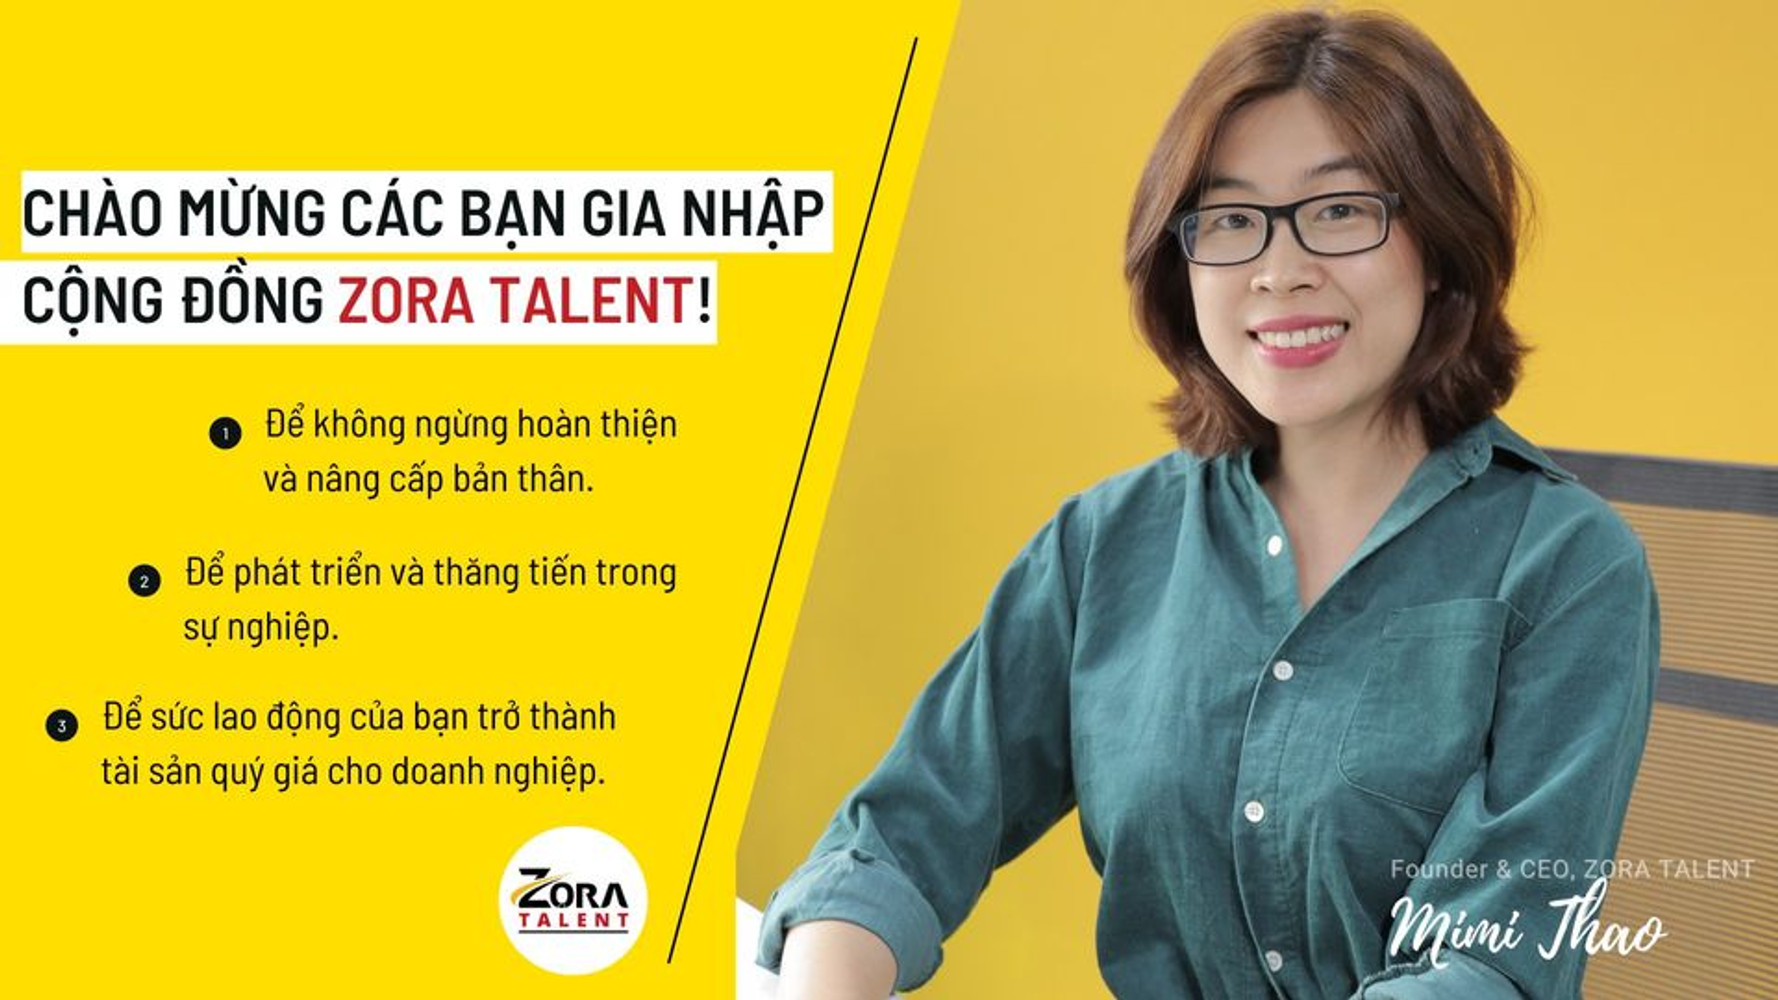 Zora Talent